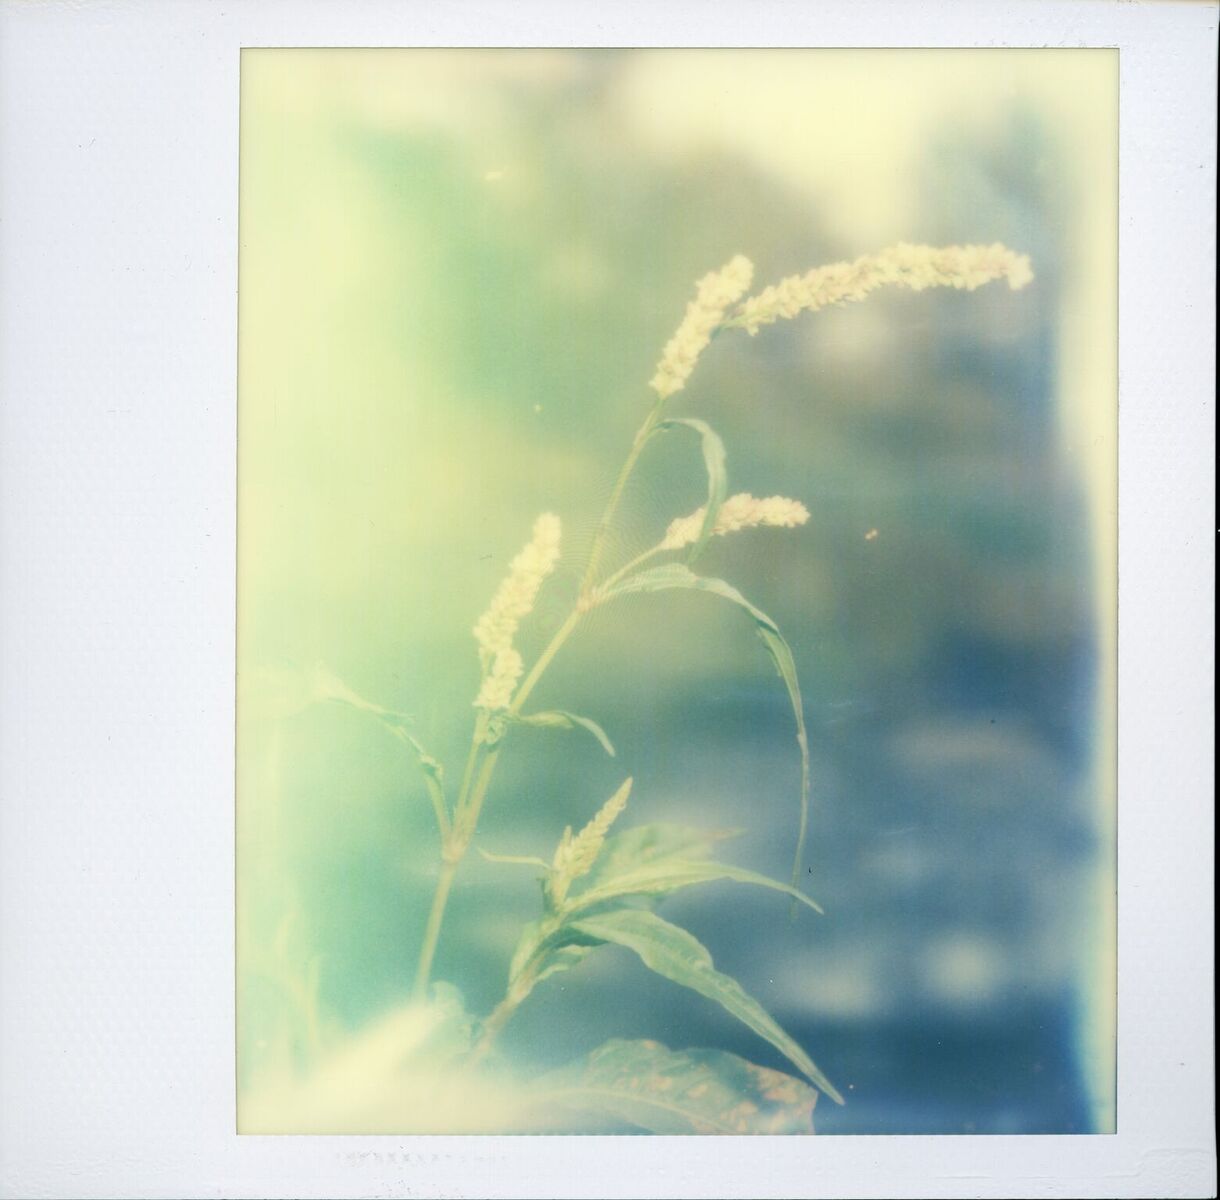 Fairy Grass | Polaroid SX-70 | Impossible Project Spectra Color Gen 2 | Ecasy Chino